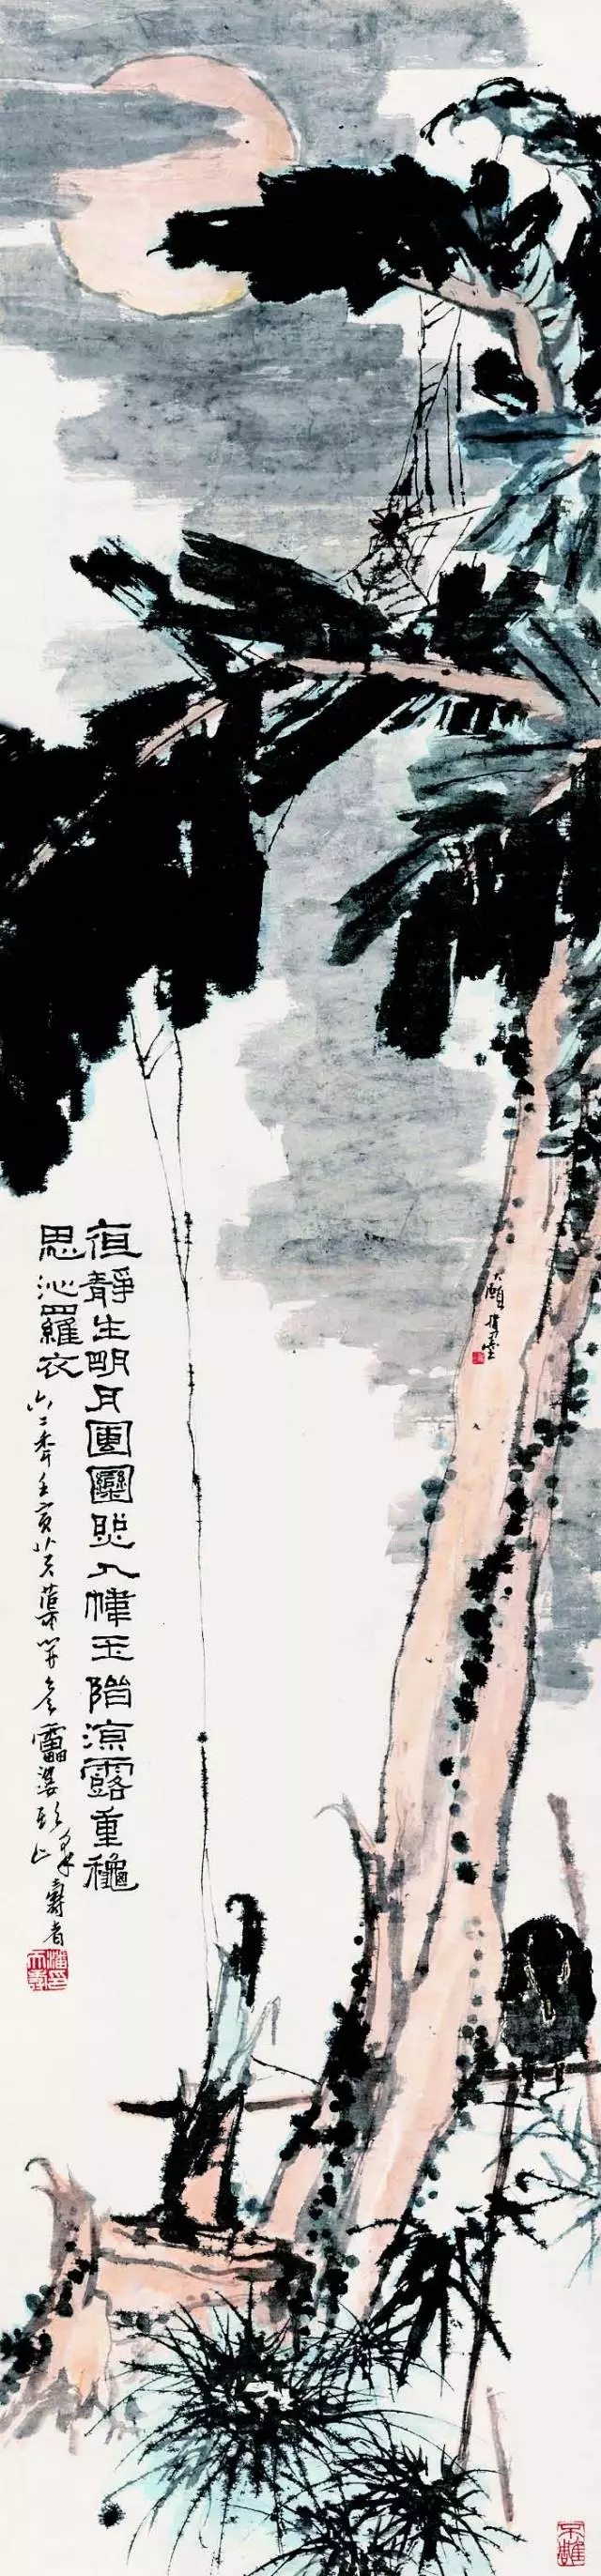 潘天寿的中国画思想